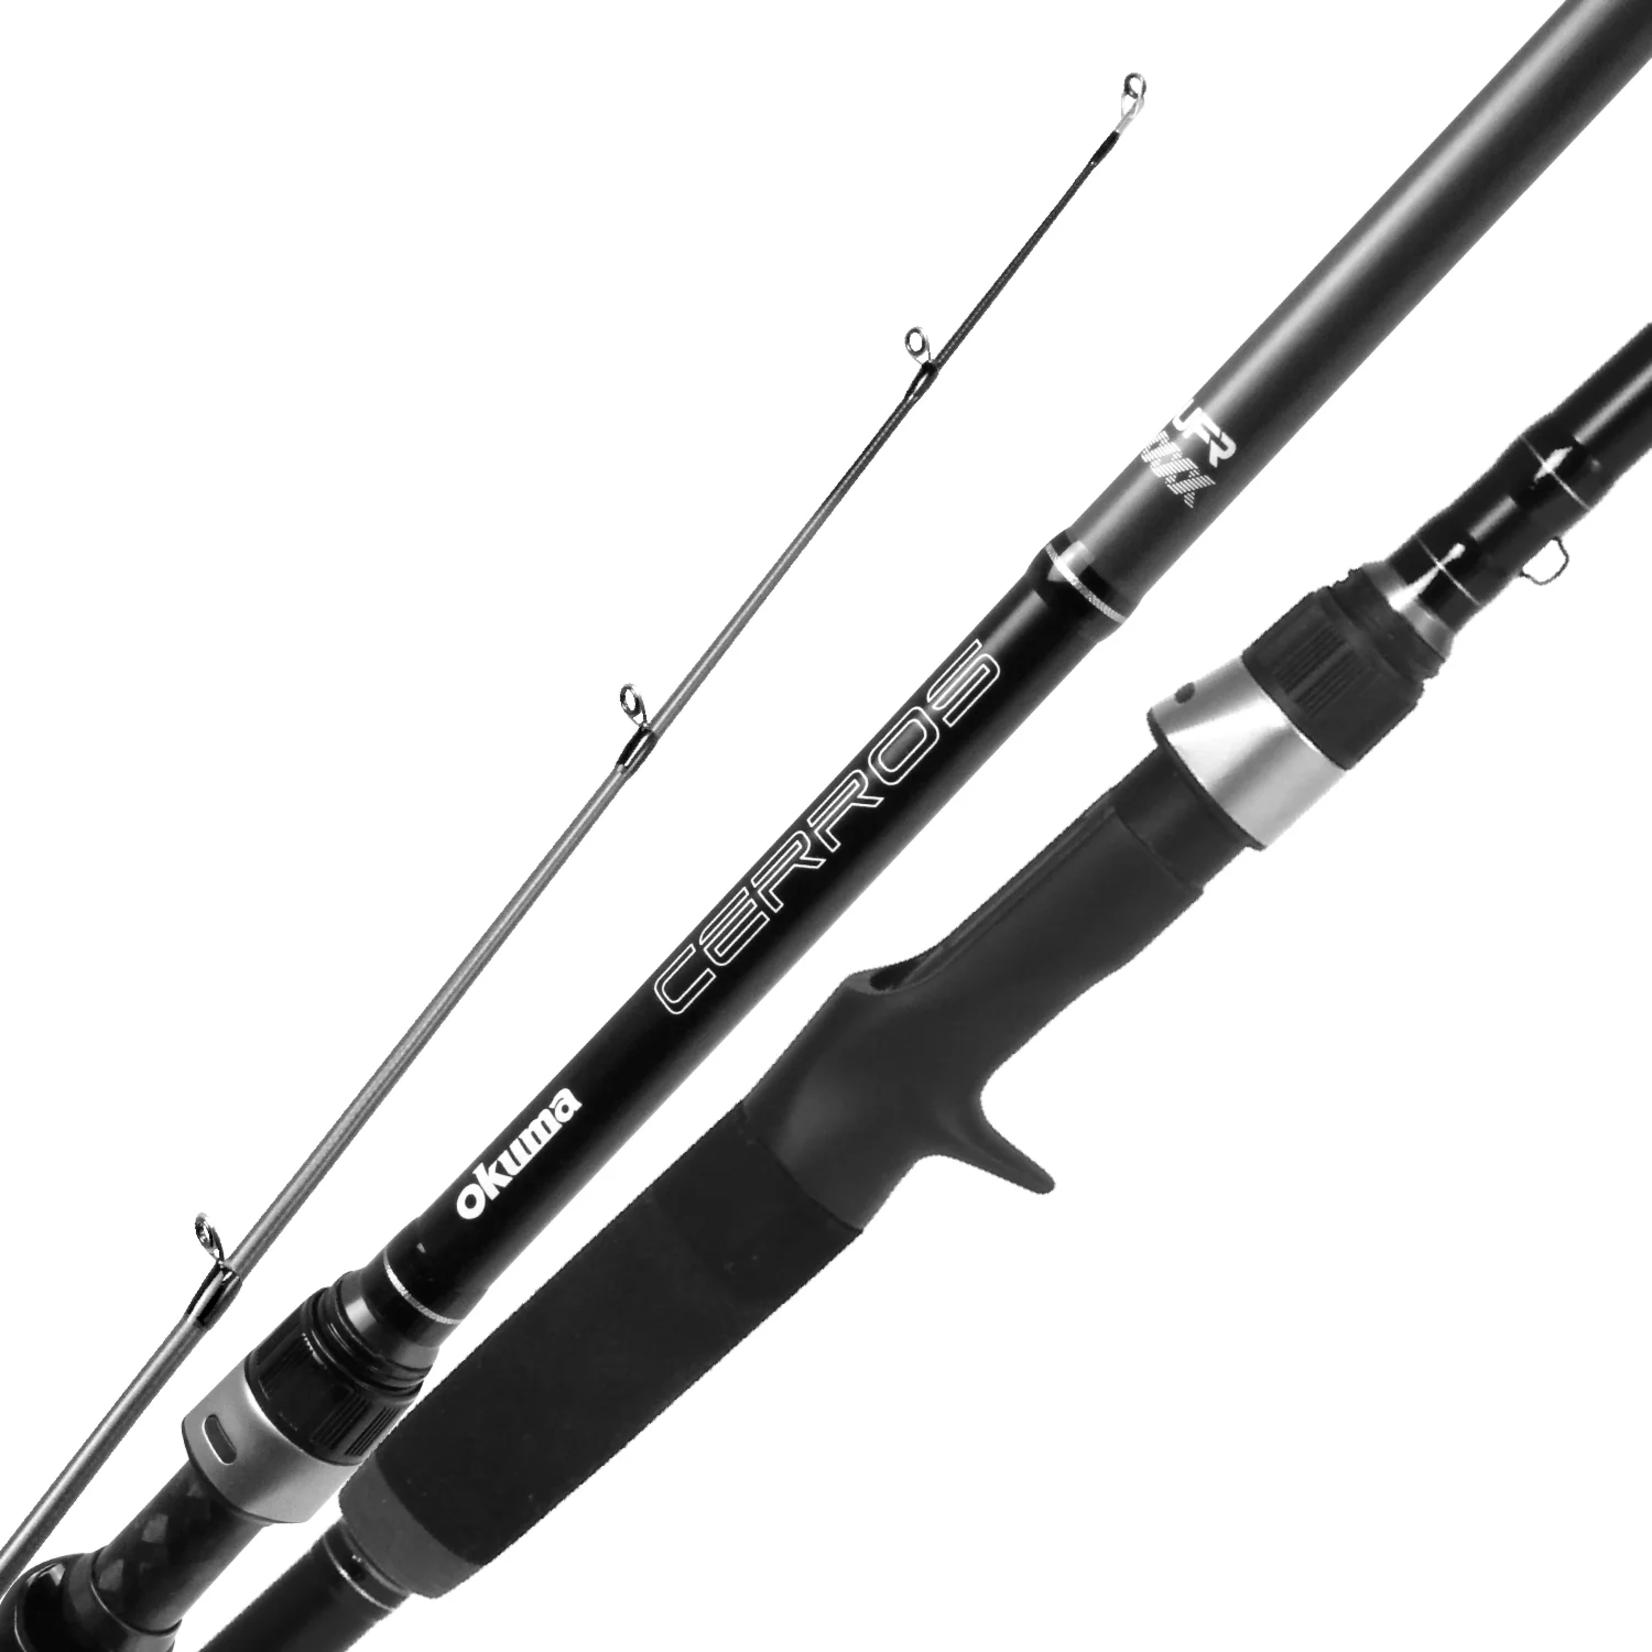 https://cdn.shoplightspeed.com/shops/643135/files/53422614/1652x1652x2/okuma-fishing-tackle-okuma-cerros-casting-rods.jpg